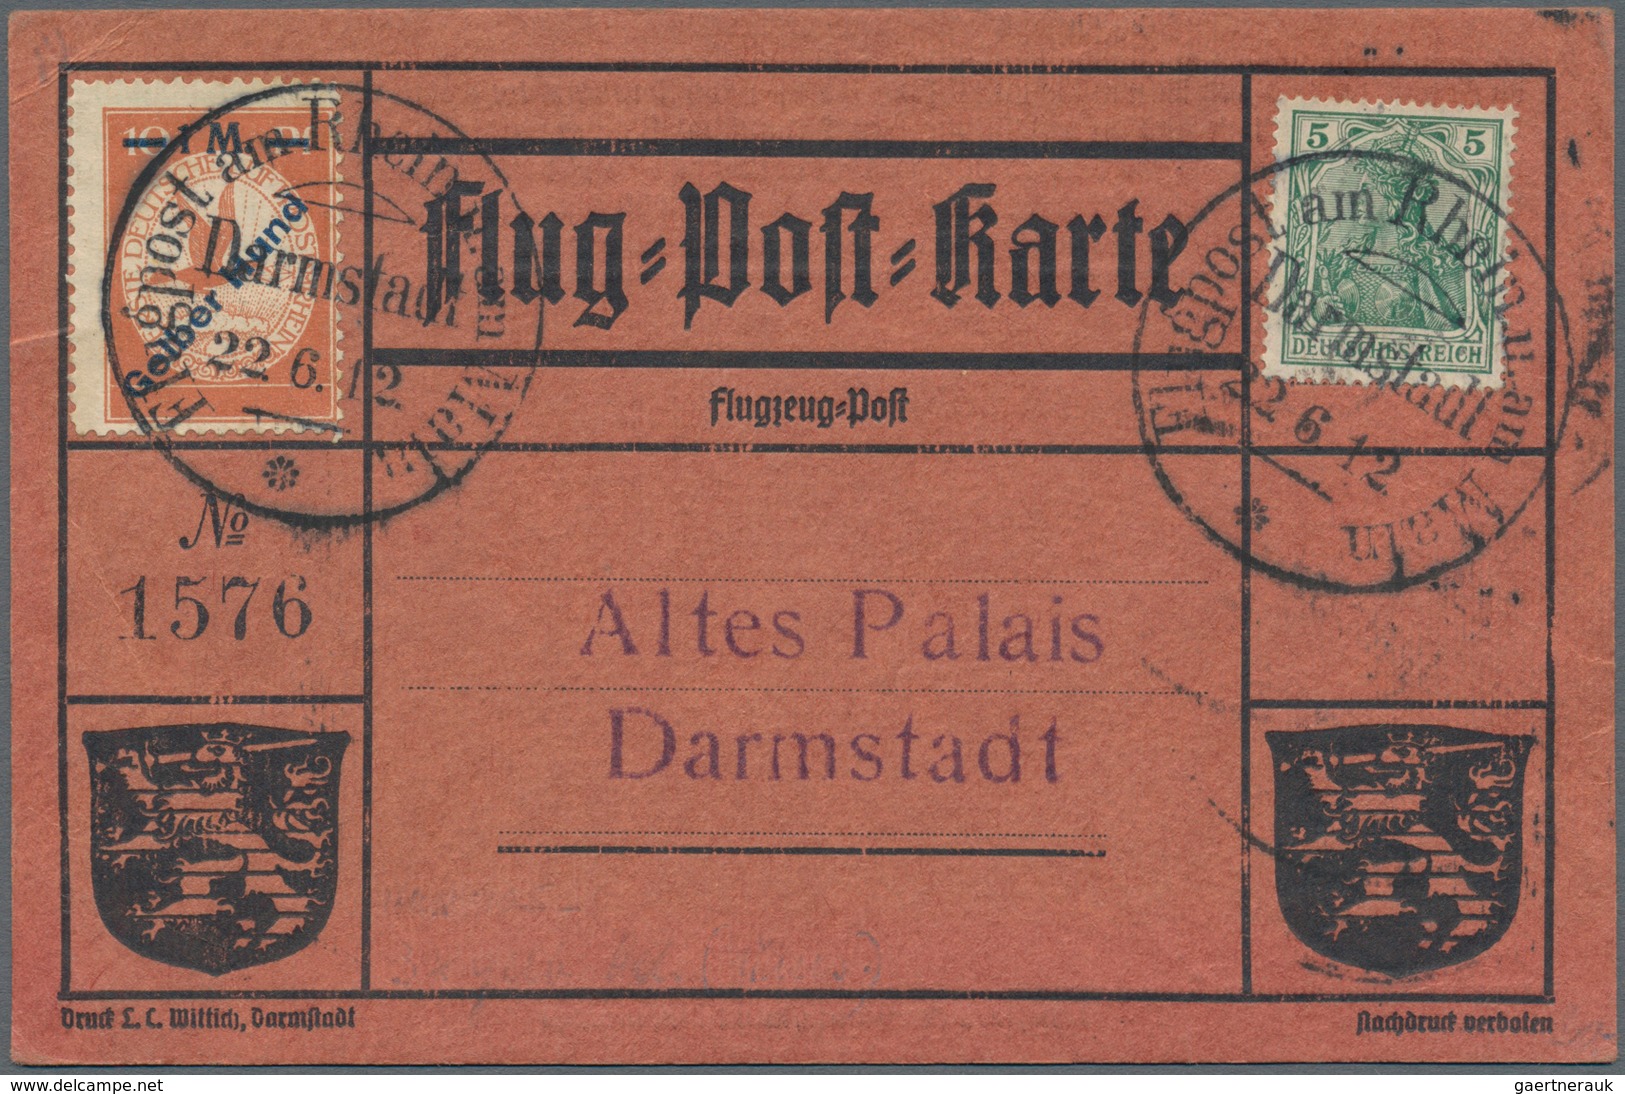 Flugpost Deutschland: 1912. Scarce Pioneer Gelber Hund - Yellow Dog Airmail Card Used During The Gra - Luft- Und Zeppelinpost